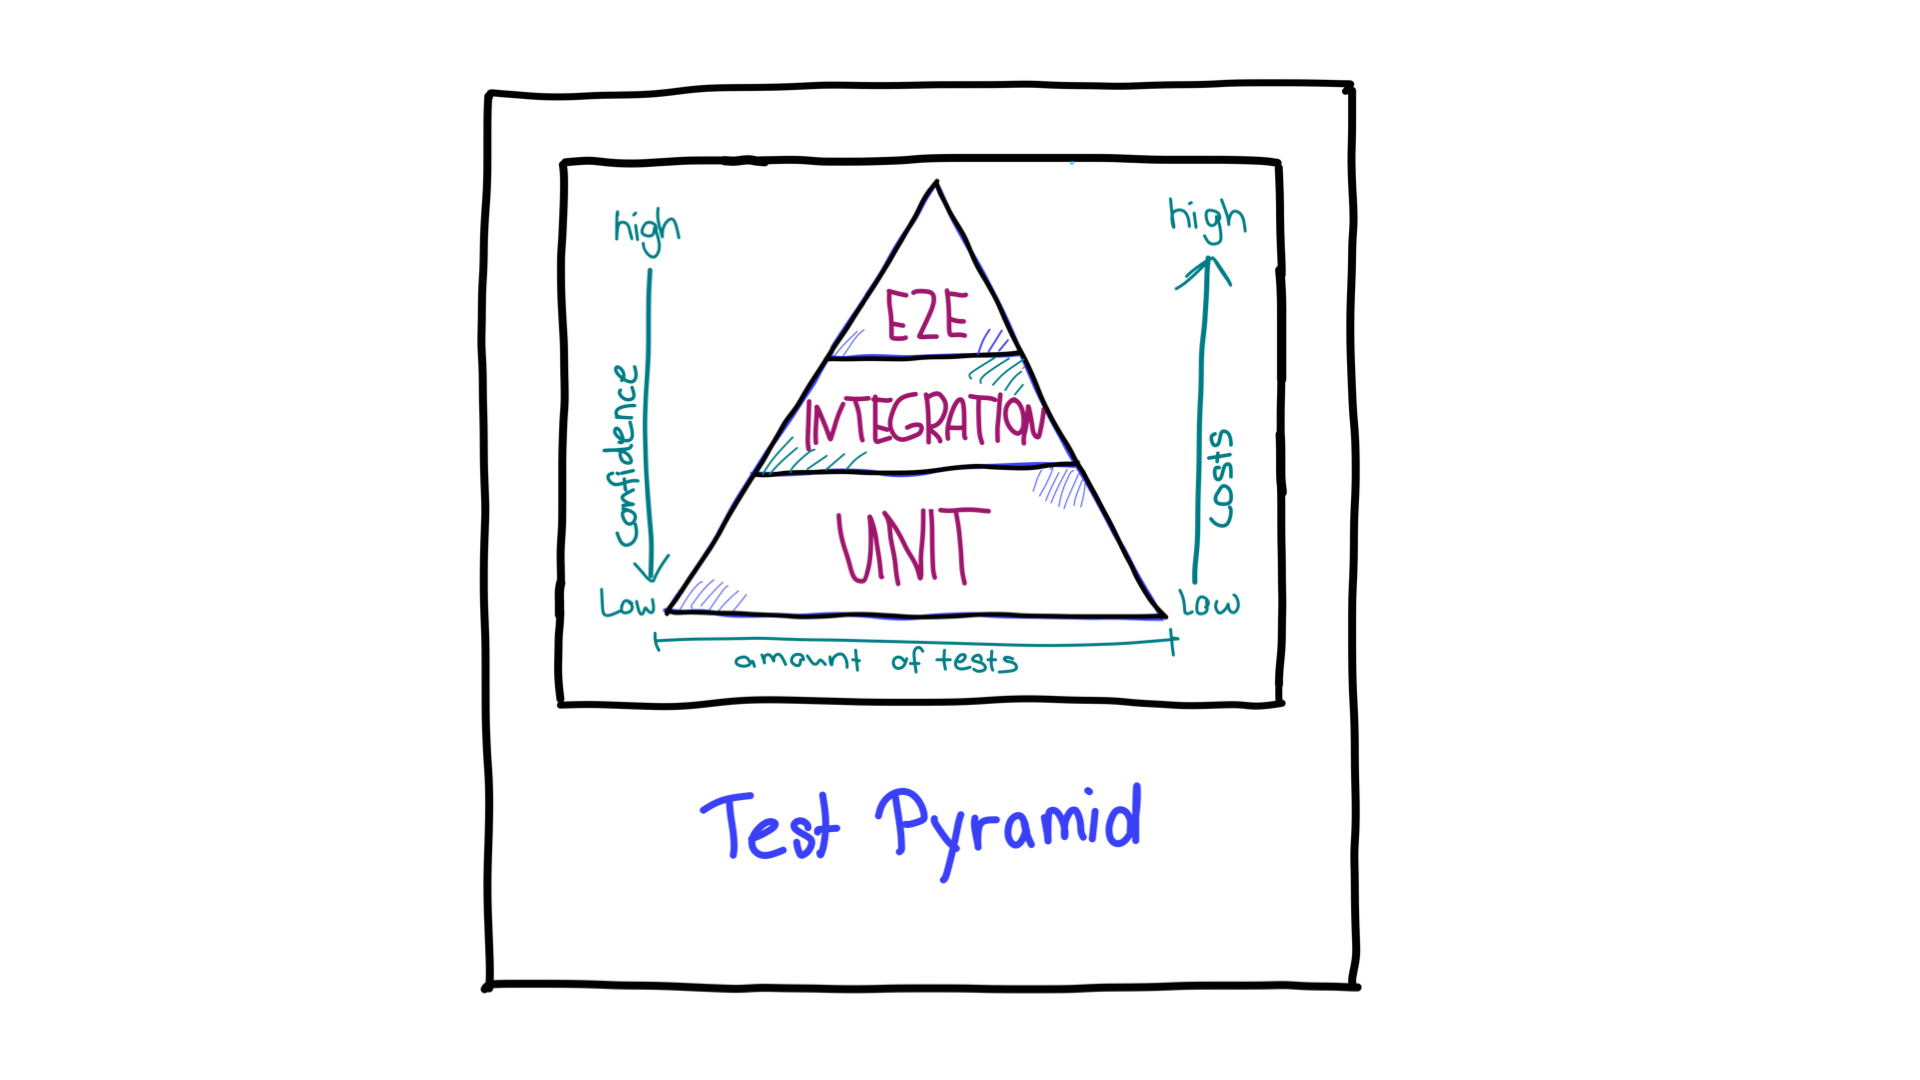 Farklı test türleri için gerekli olan güven yönünü ve kaynakları gösteren oklar içeren test piramidi.